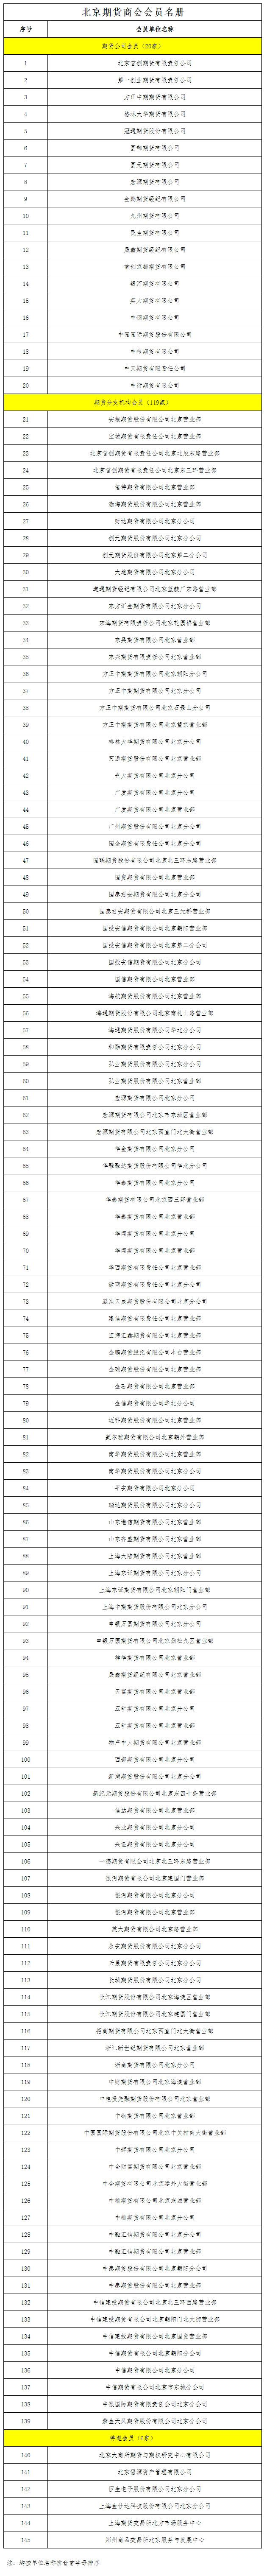 北京期货商会会员名册2.jpg